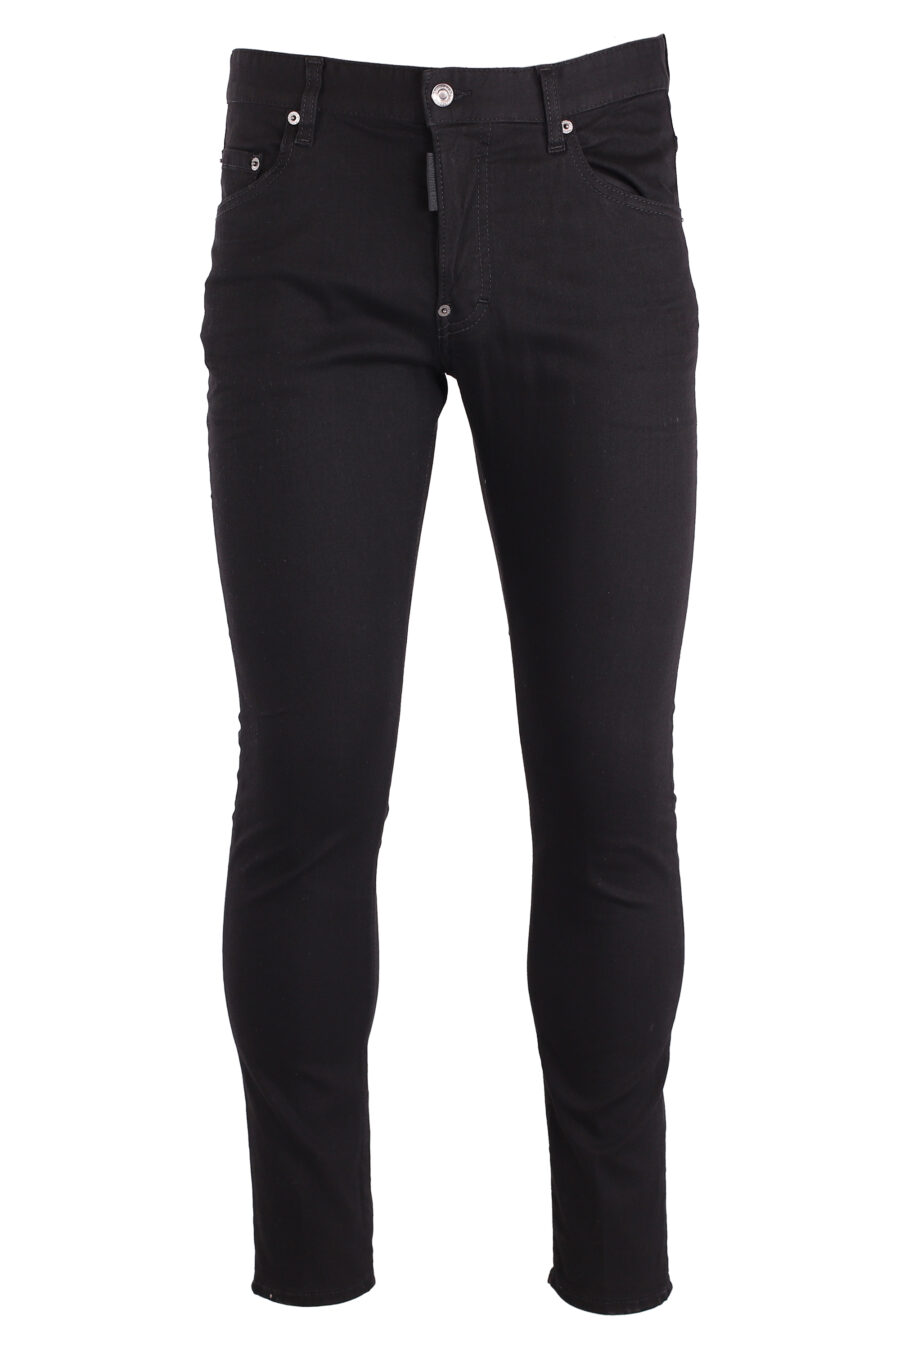 Plain black "skater jean" jeans - IMG 8998